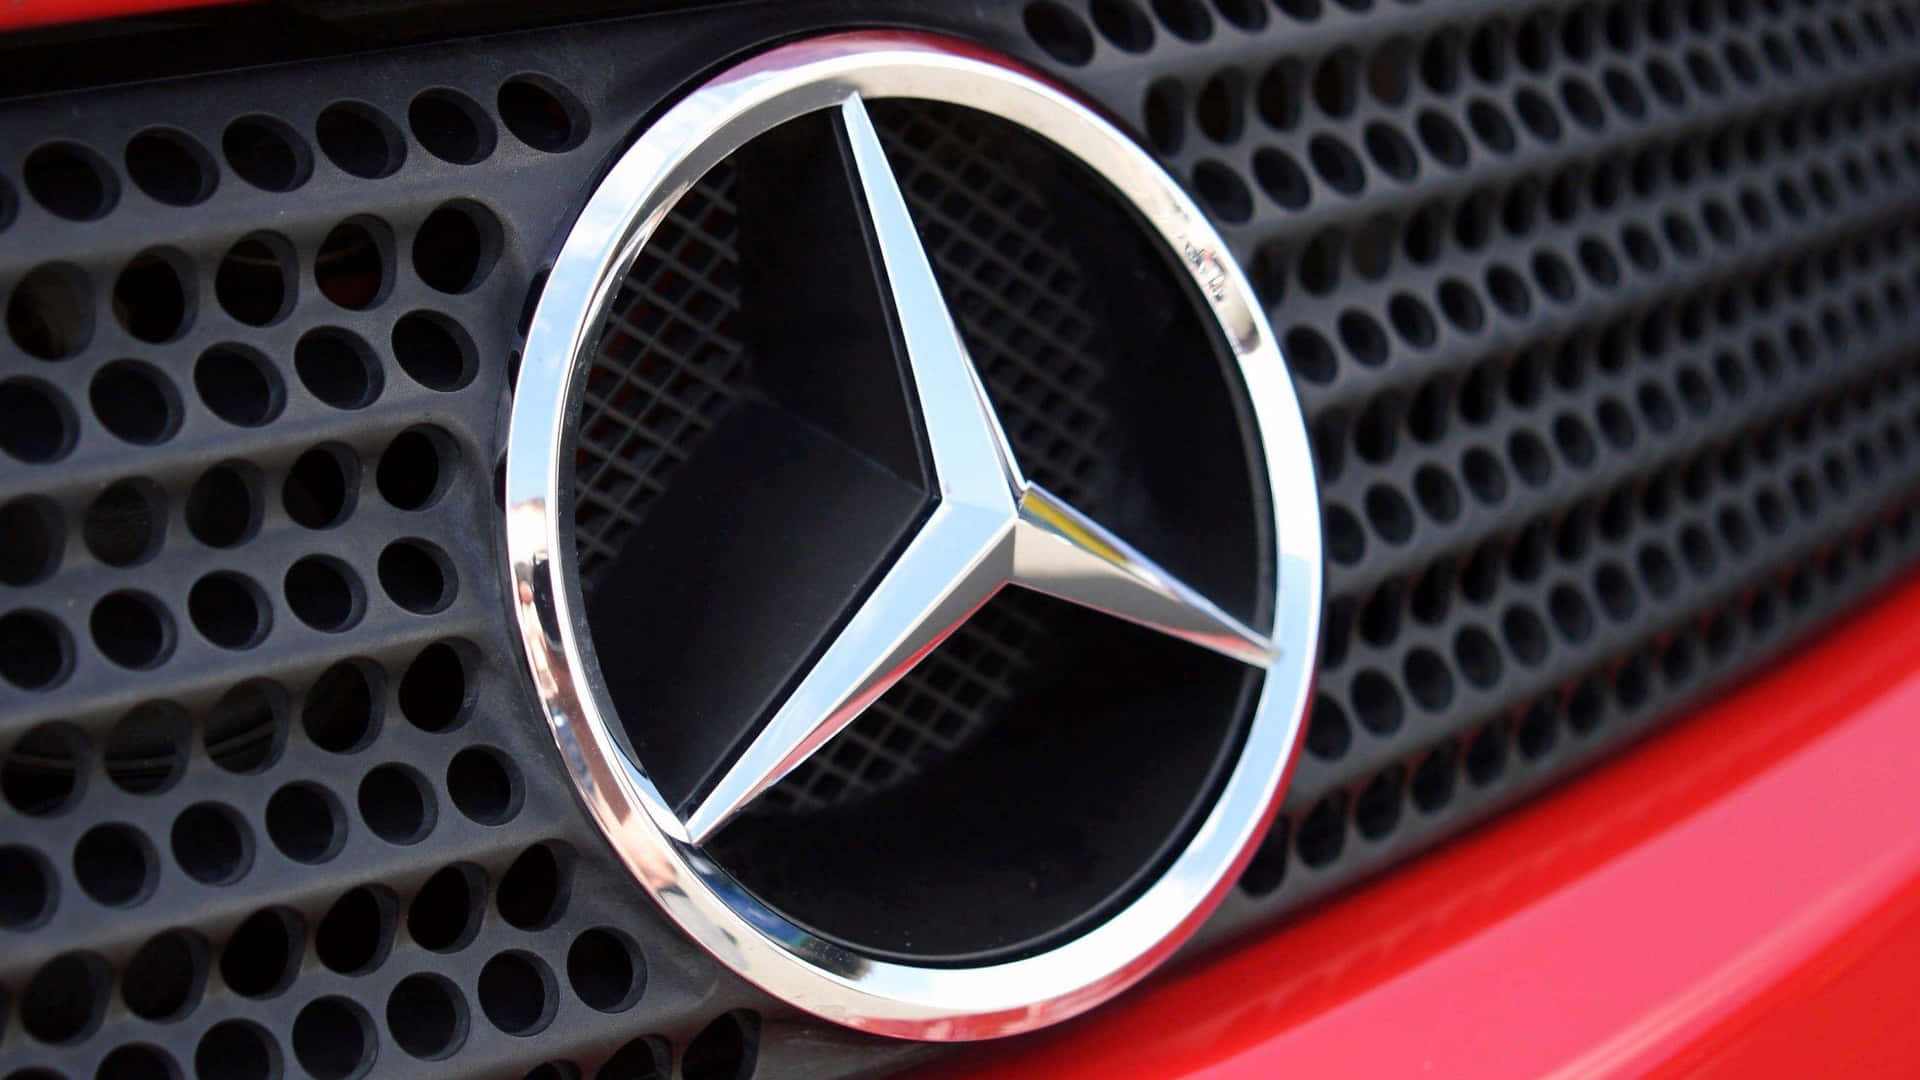 The Mercedes Benz Logo